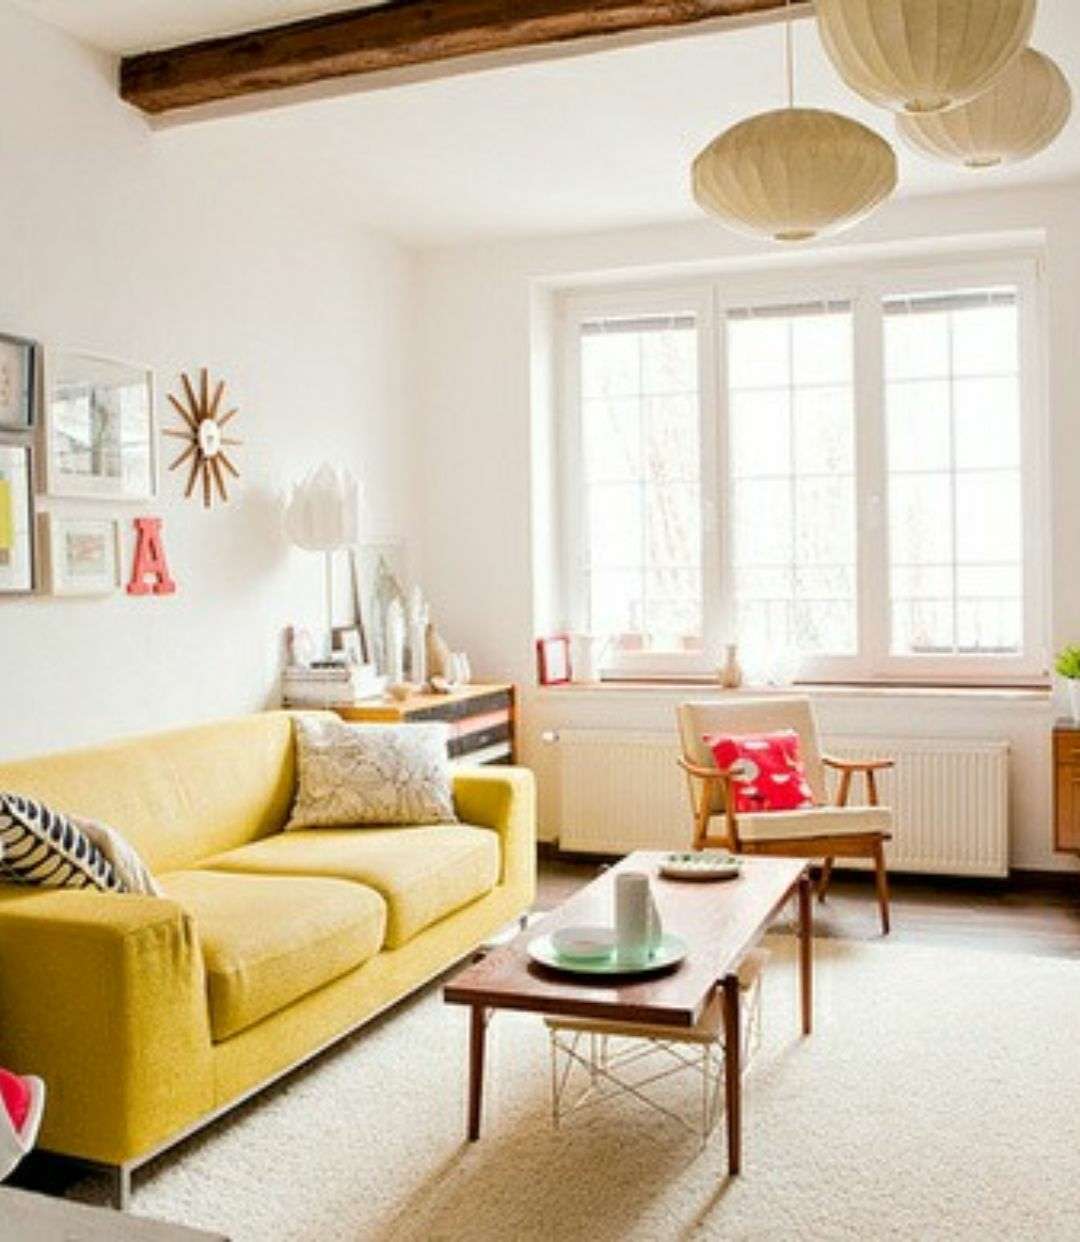 给家里的沙发换个美丽的颜色吧柠檬黄的沙发看起来温暖明亮